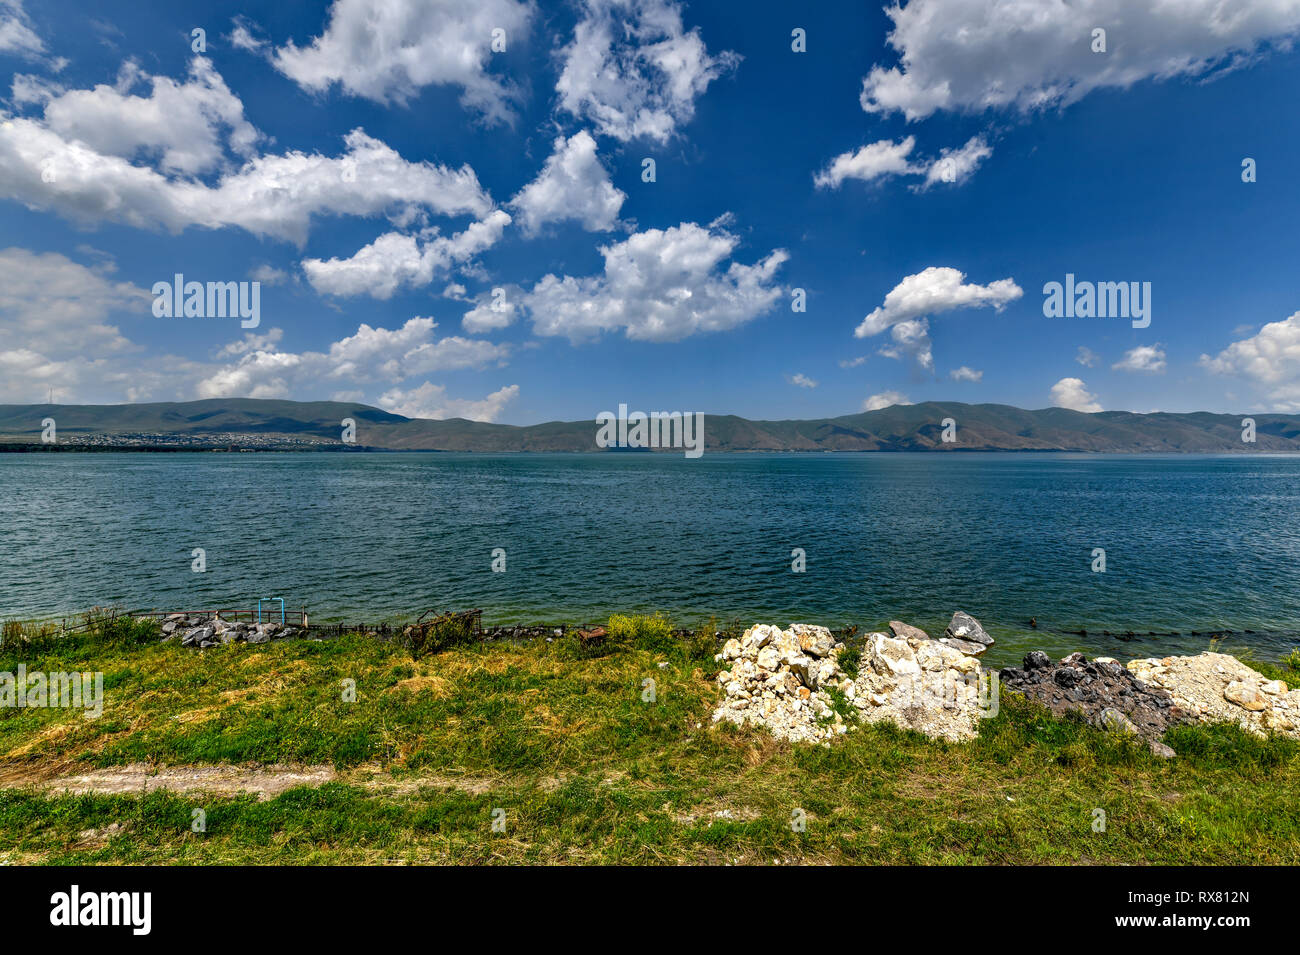 El lago Sevan, el lago más grande de Armenia y la región del Cáucaso. Foto de stock